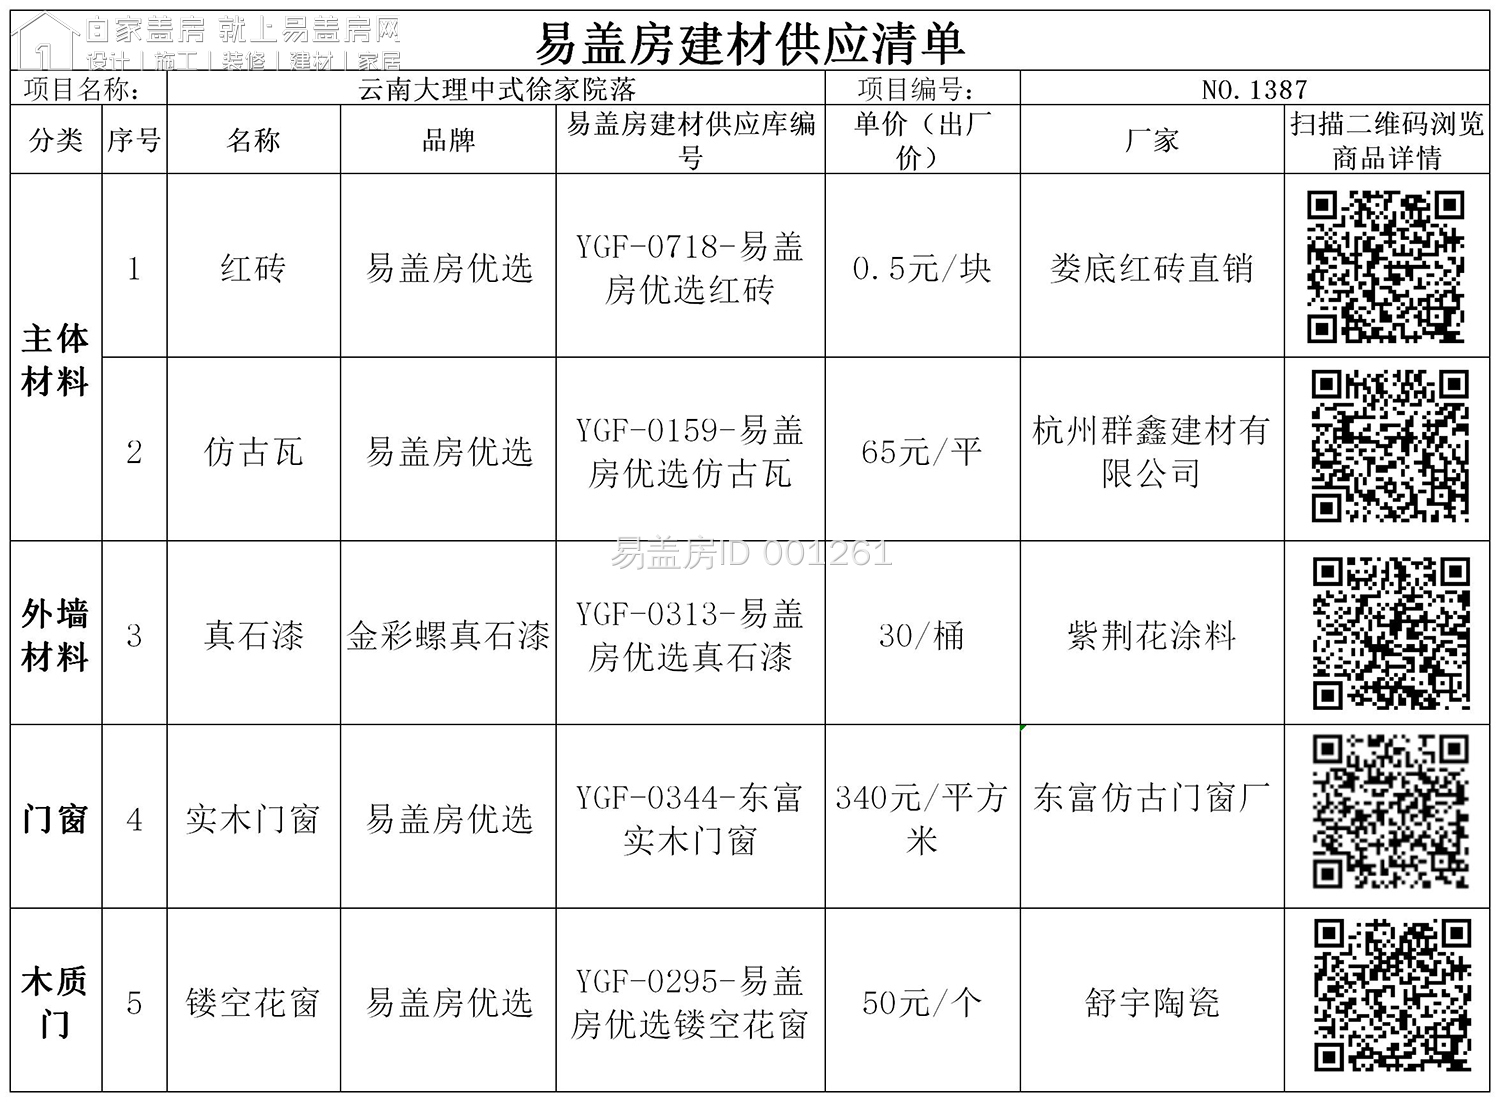 四川内江松林蚕业有限责任公司四合院建材供应清单.jpg